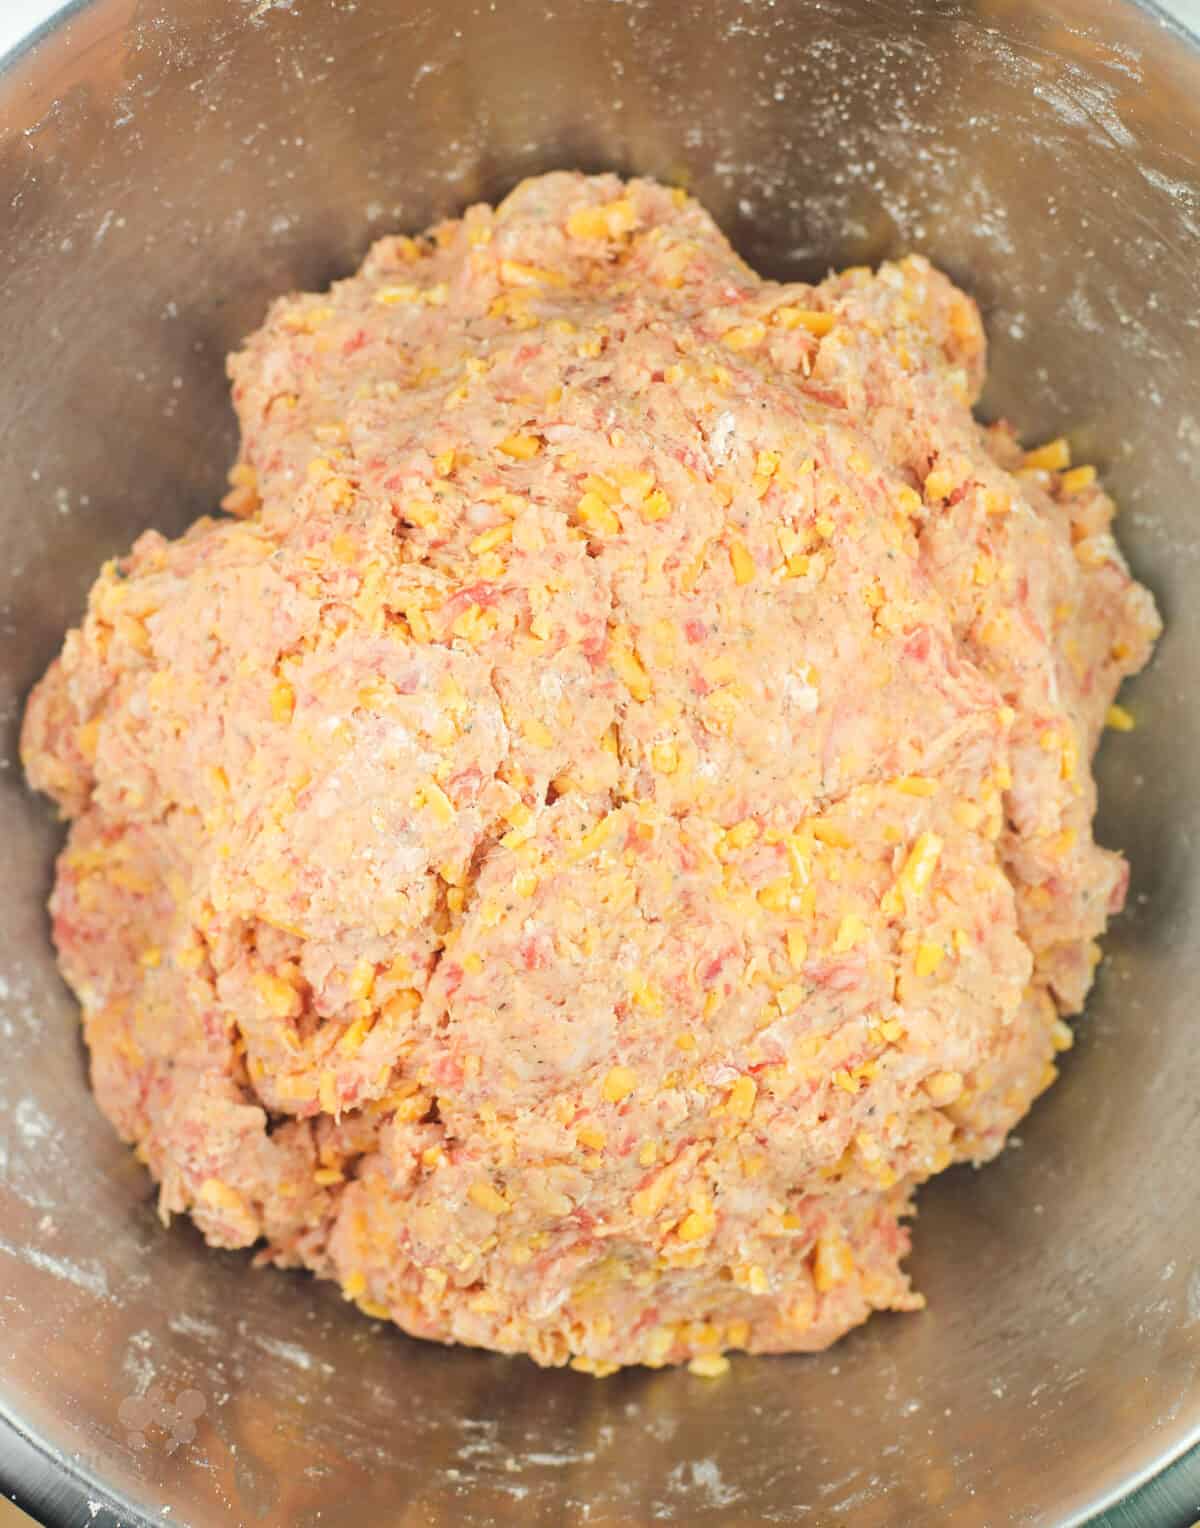 prepared dough in metal mixing bowl